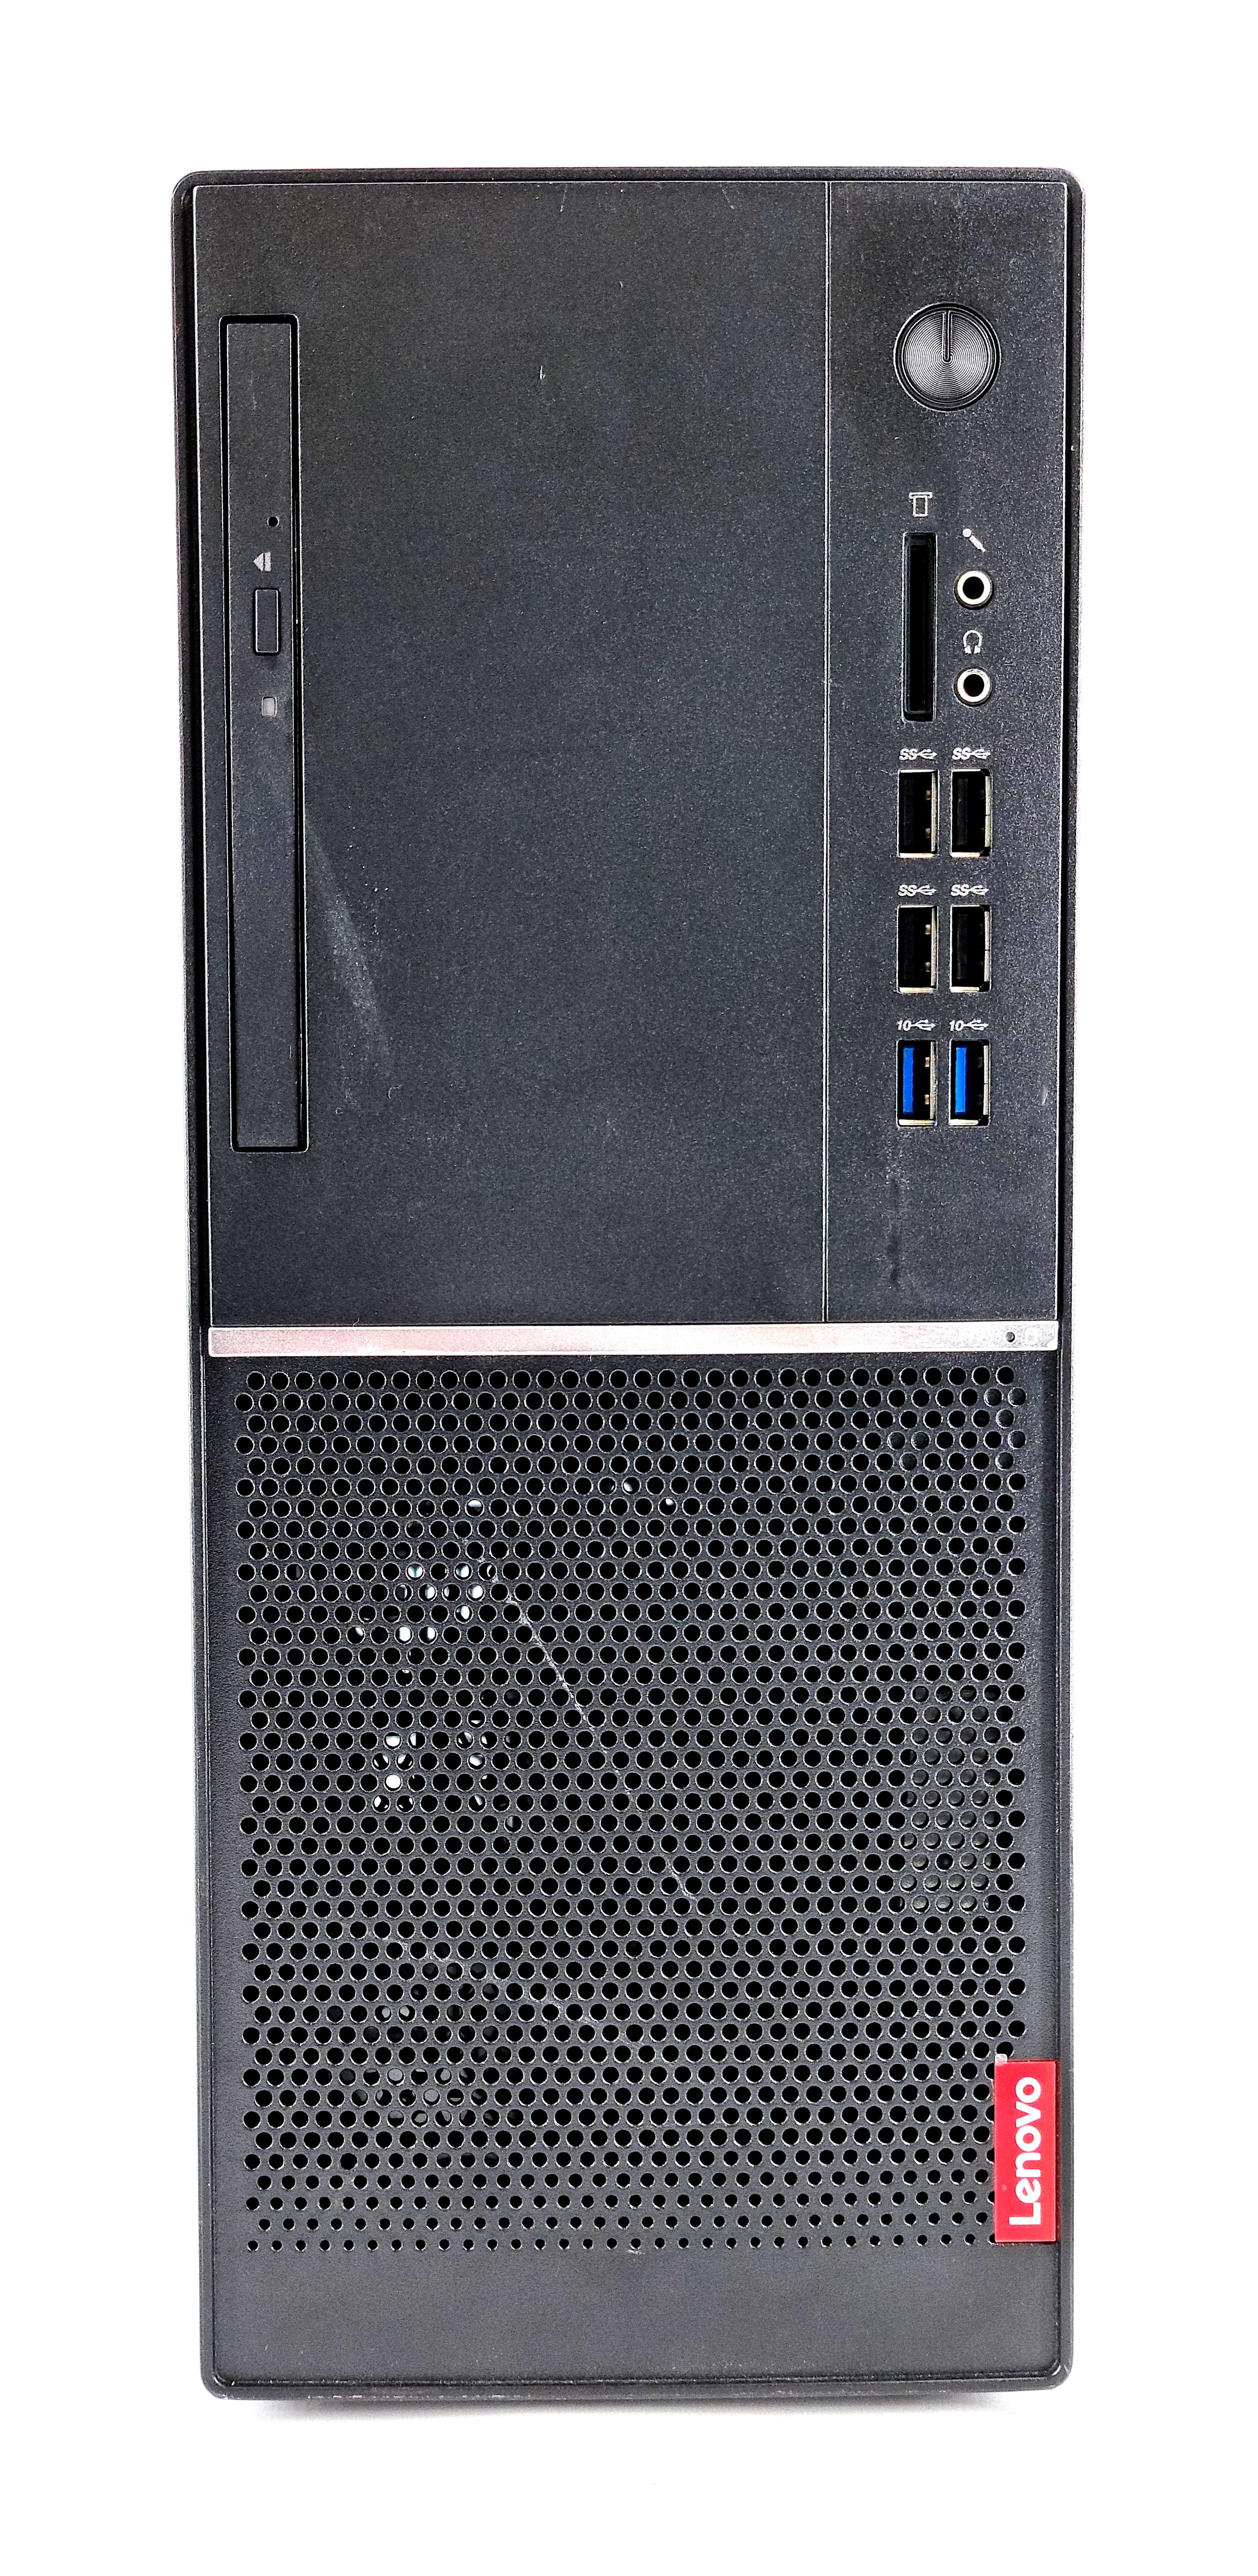 Lenovo V530-15ICB PC, Core i5-8500, 8GB RAM, 256GB SSD